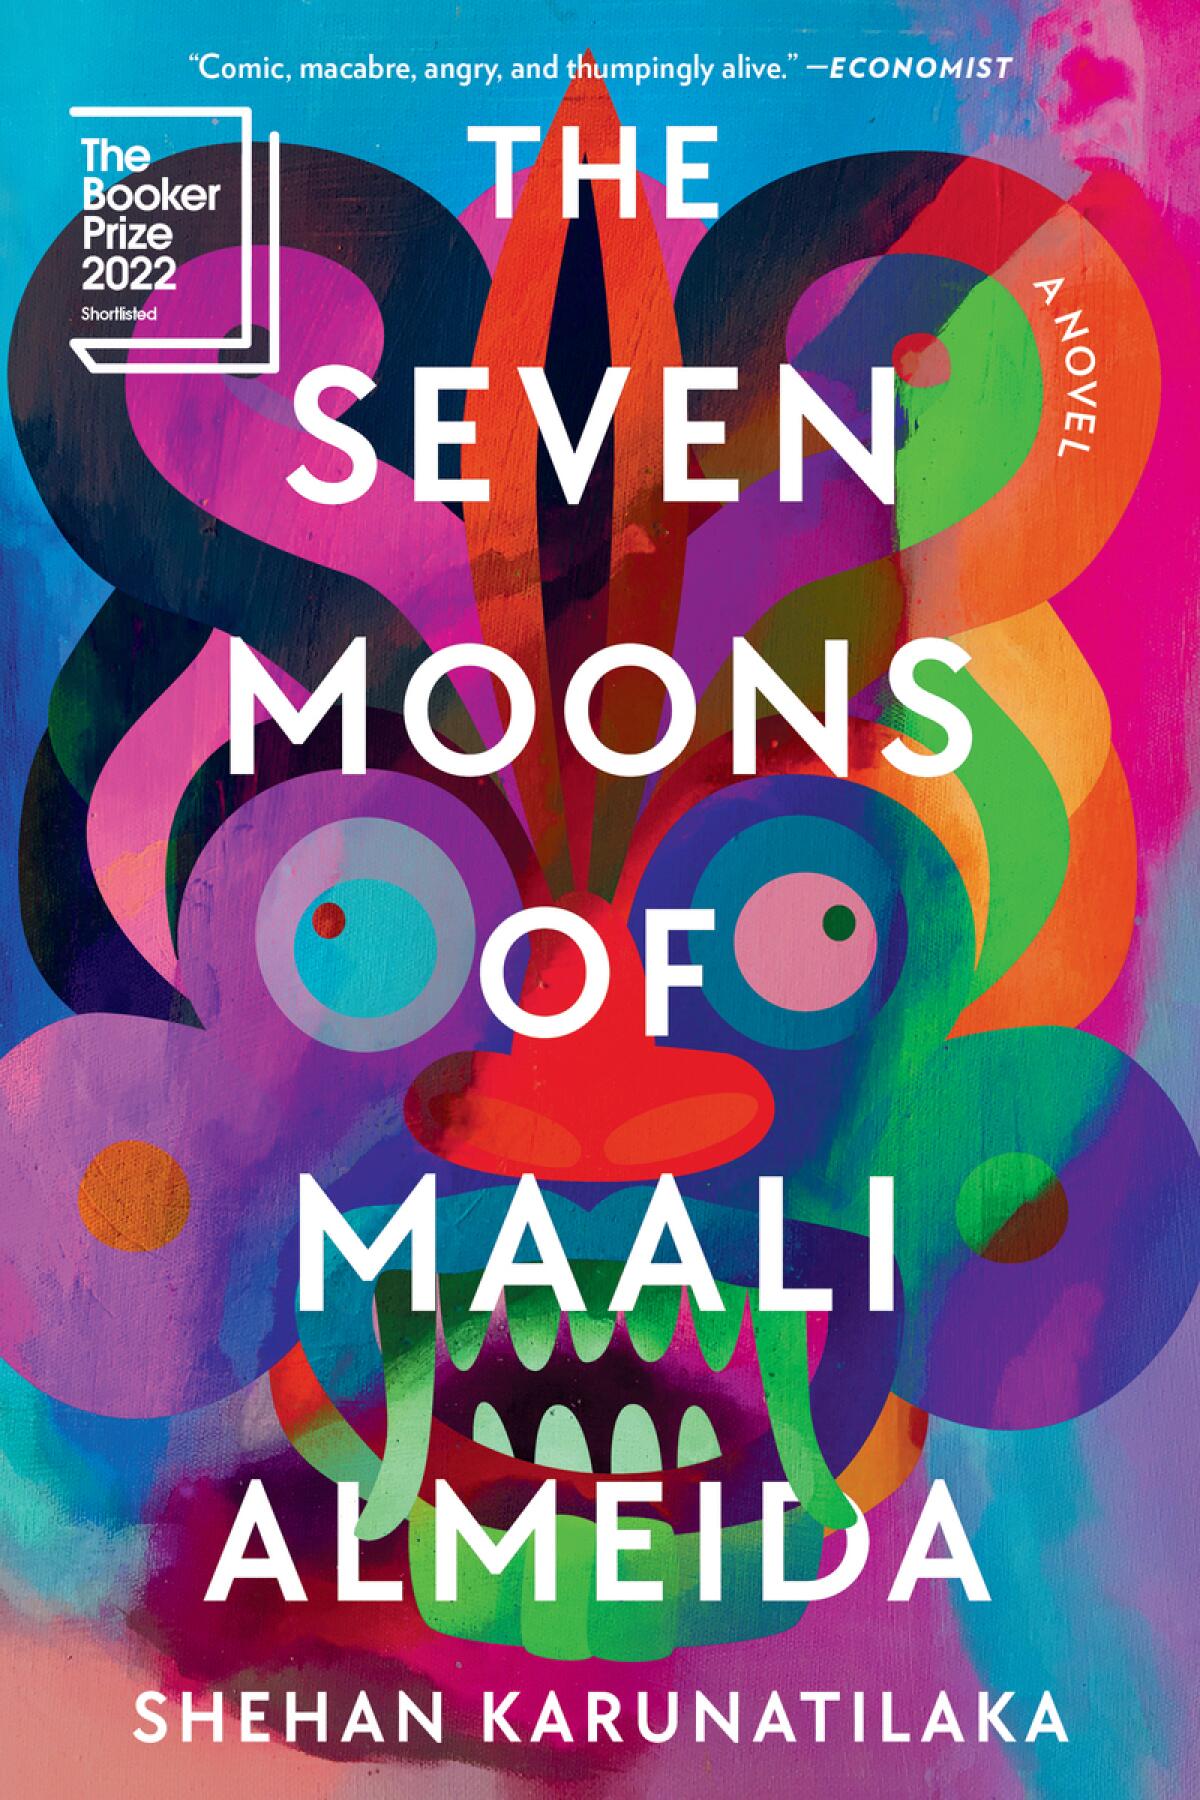 "The Seven Moons of Maali Almeida," by Shehan Karunatilaka